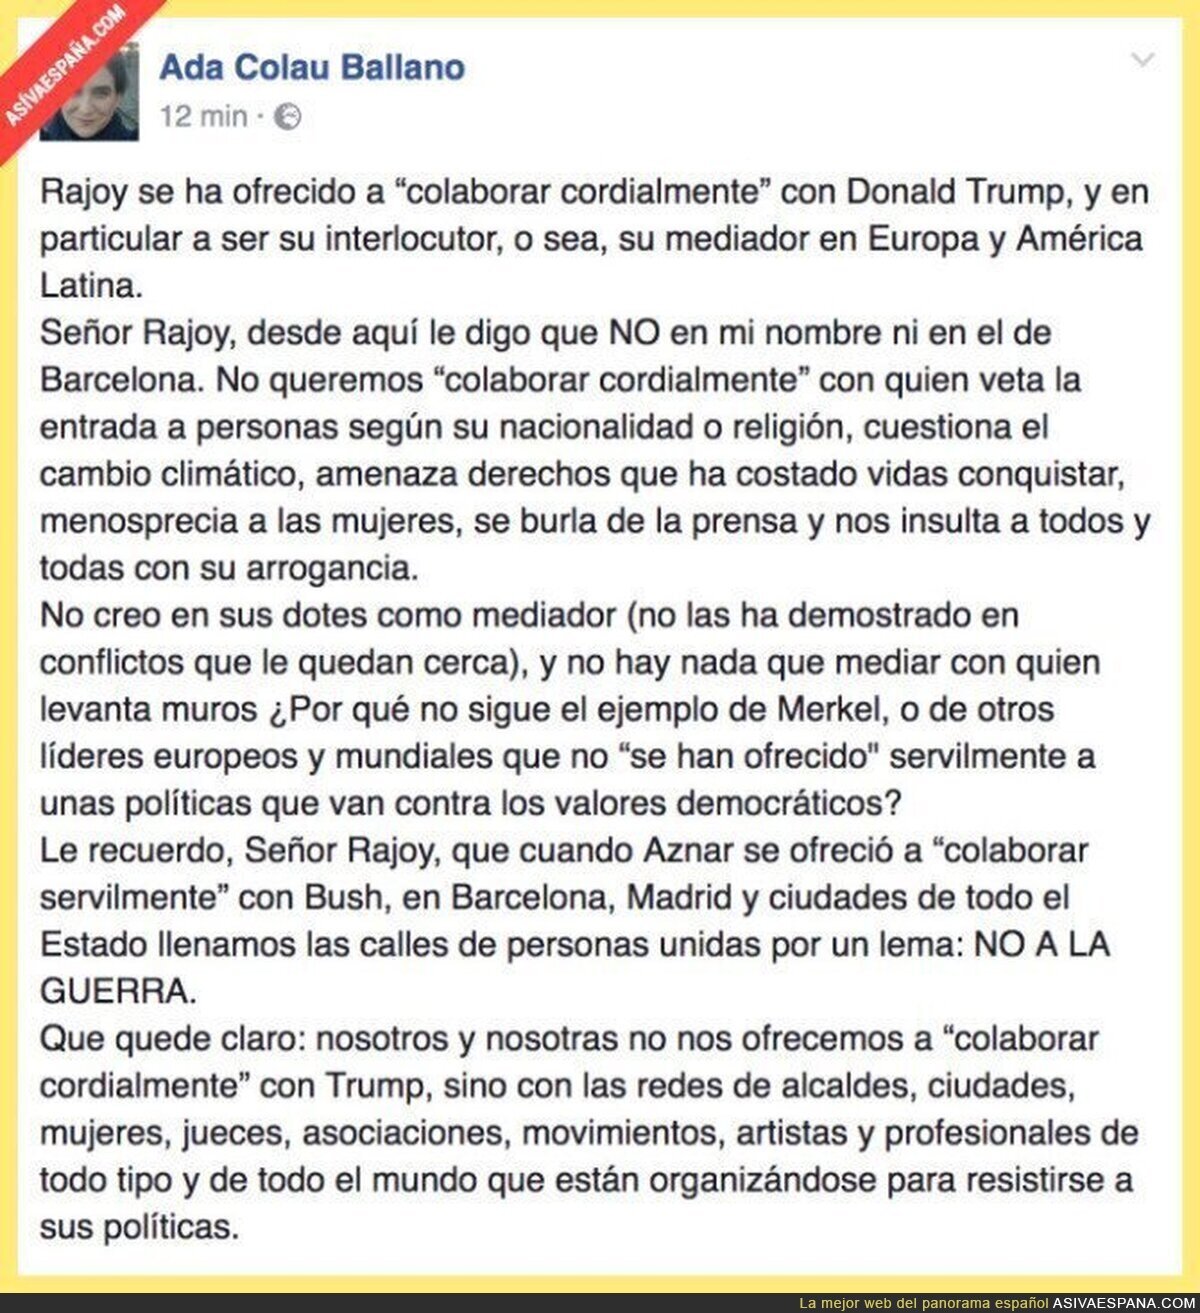 El mensaje crítico de Ada Colau contra Rajoy por querer ser el interlocutor de Trump en Europa